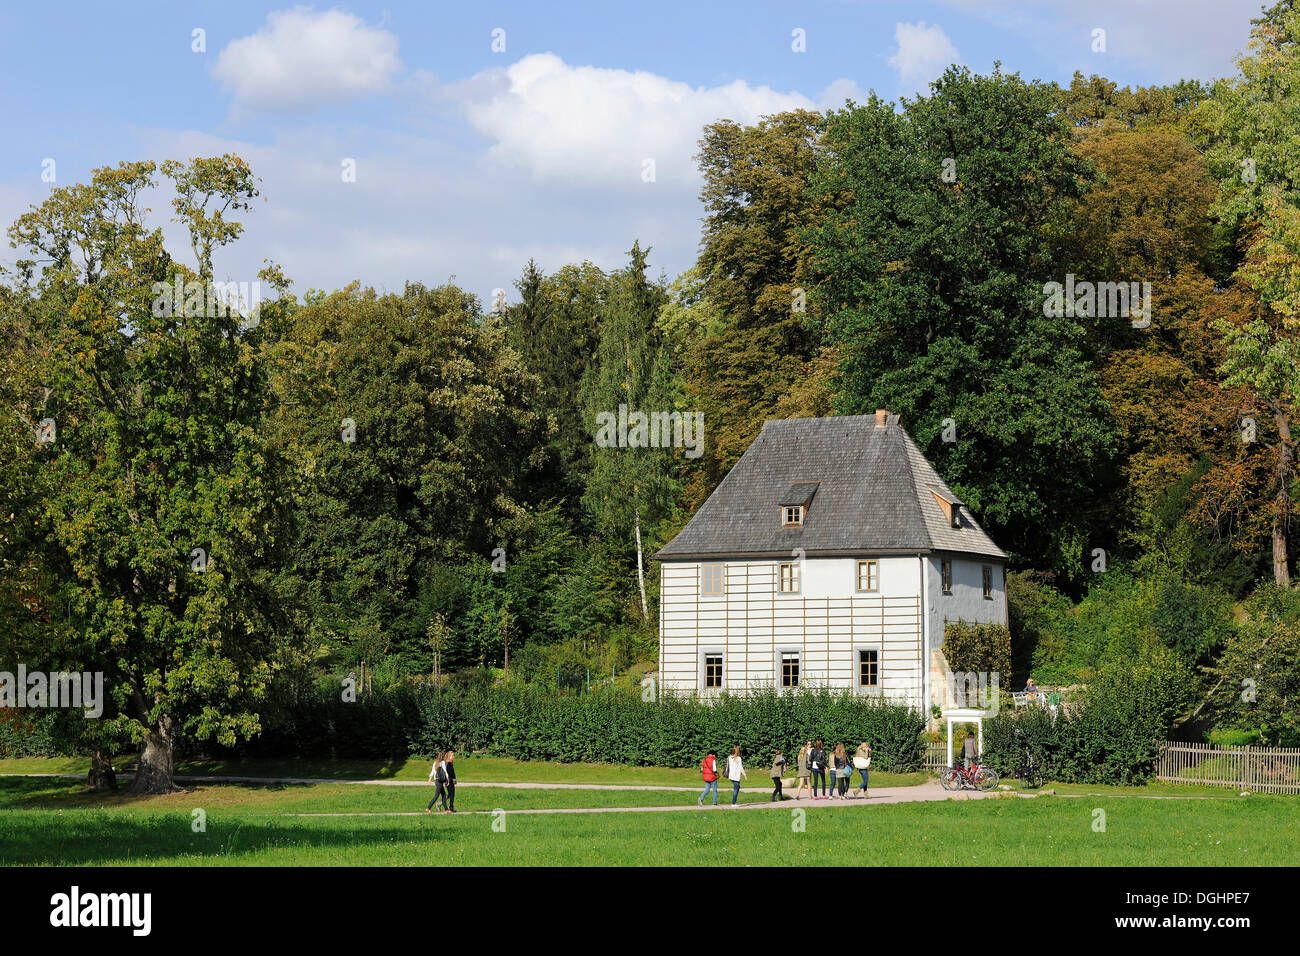 Maison de jardin de Goethe, l'UNESCO patrimoine culturel mondial, en parc sur l'ILM, Weimar, Thuringe, Allemagne Banque D'Images